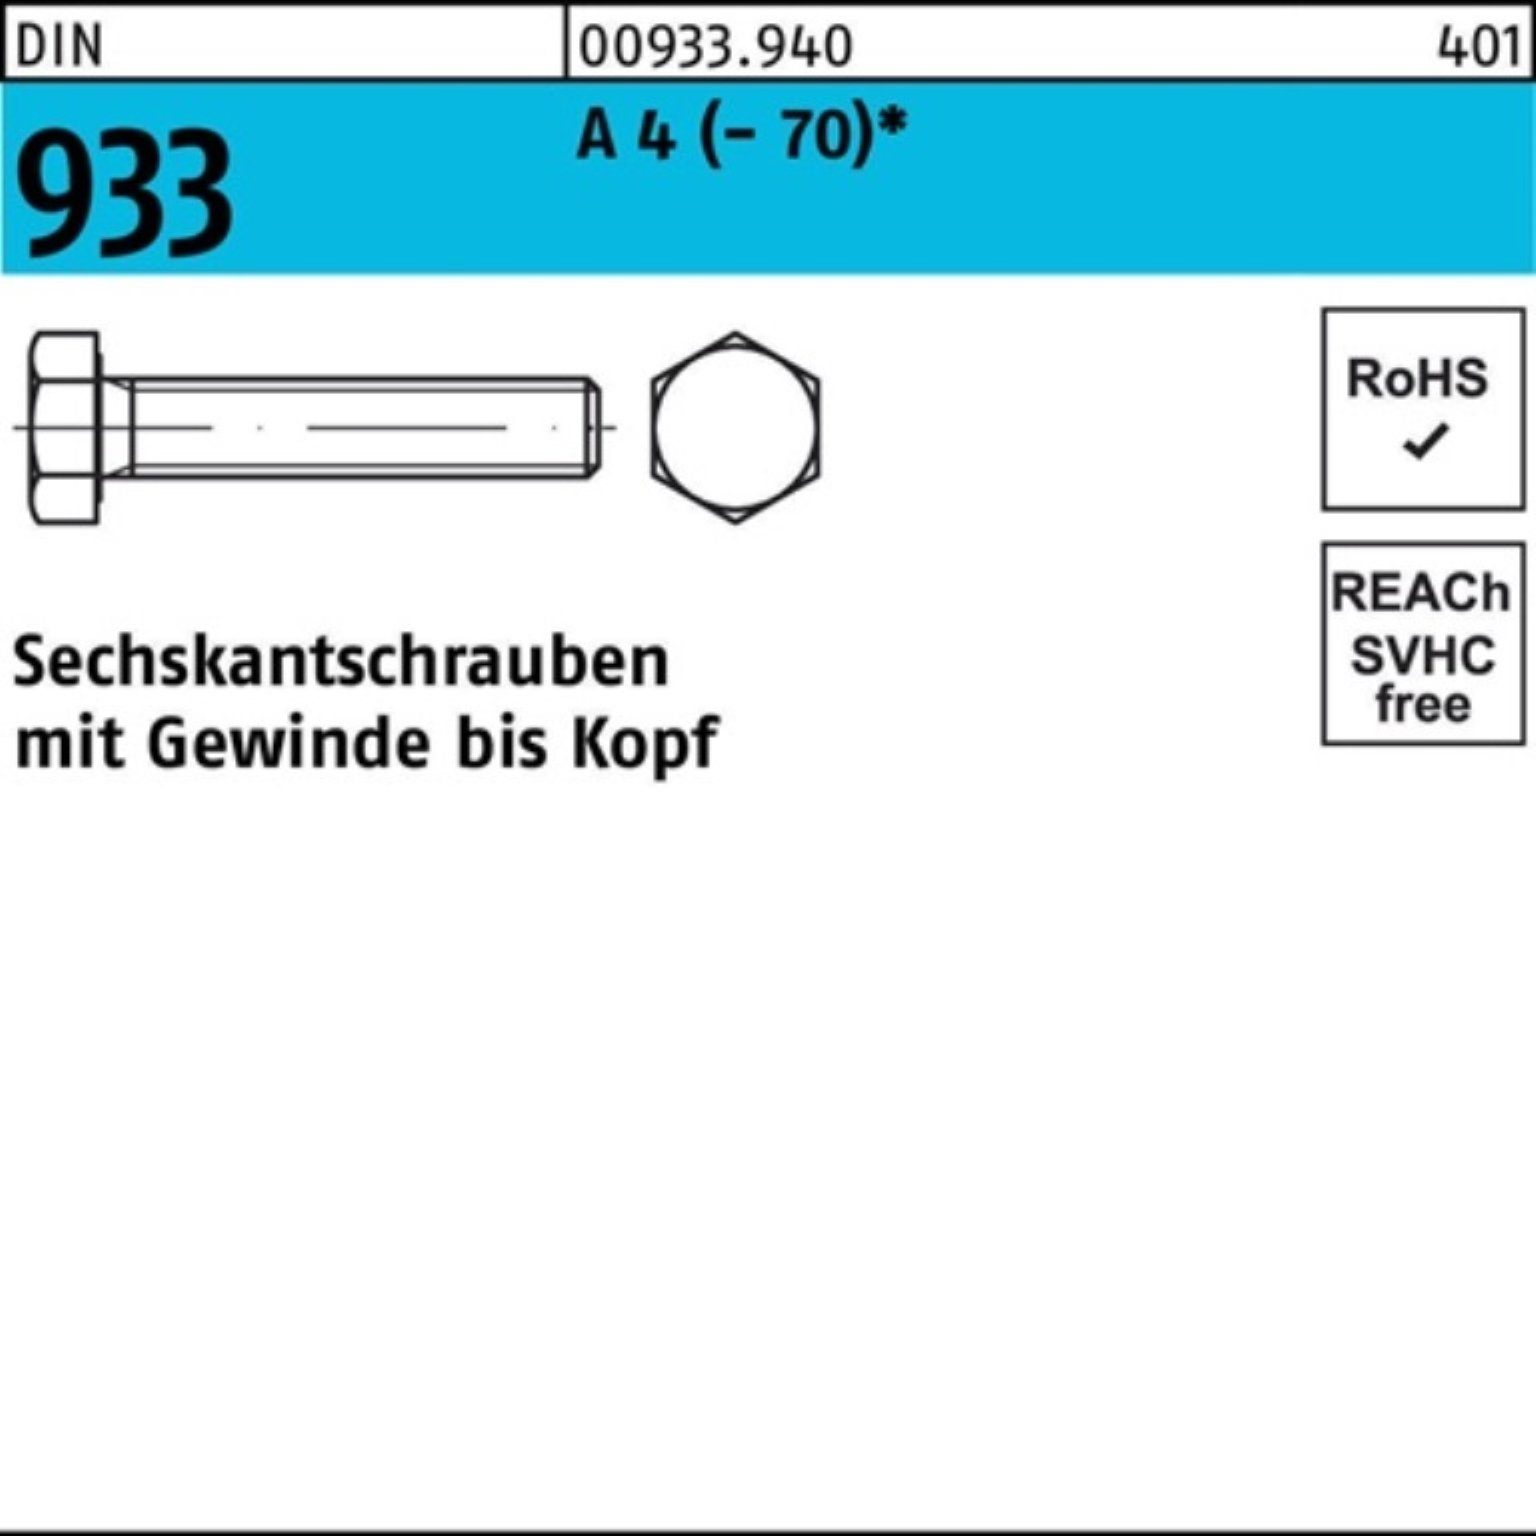 Sechskantschraube DI VG 1 Reyher A DIN 4 Sechskantschraube 933 M24x Stück (70) 100er Pack 60